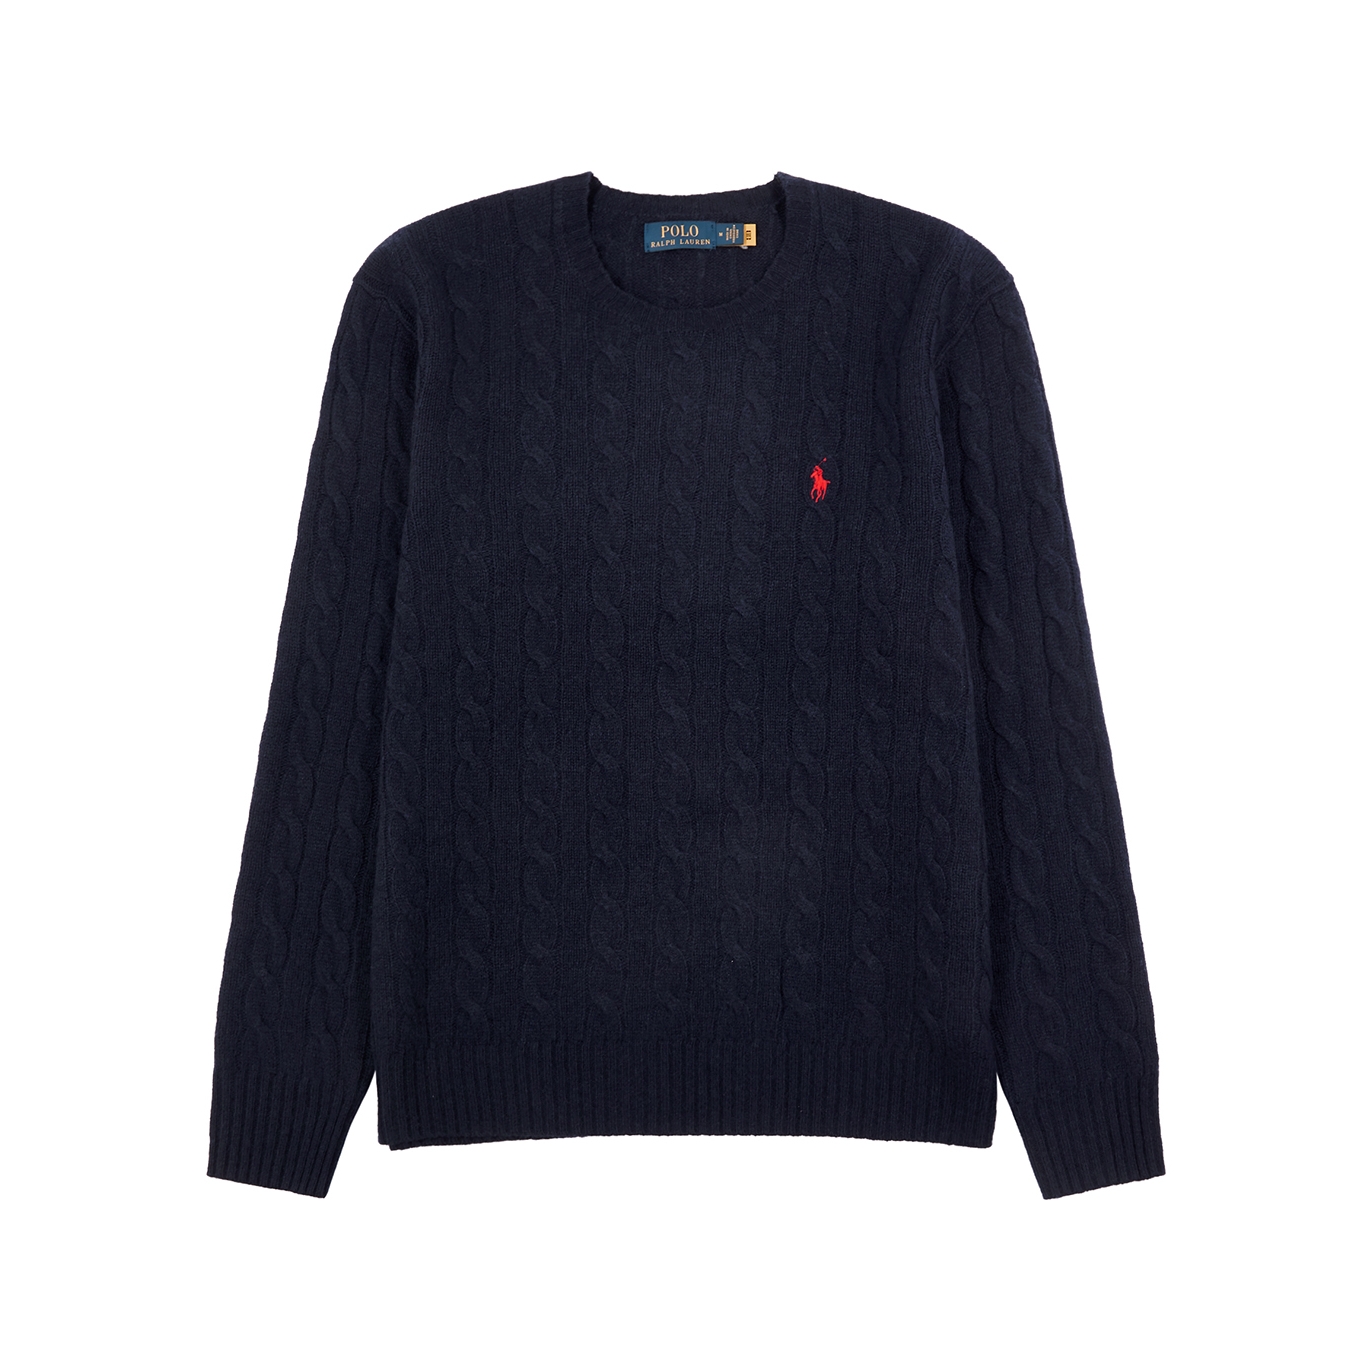 Polo Ralph Lauren Cable-knit Wool-blend Jumper - Navy - Xxl